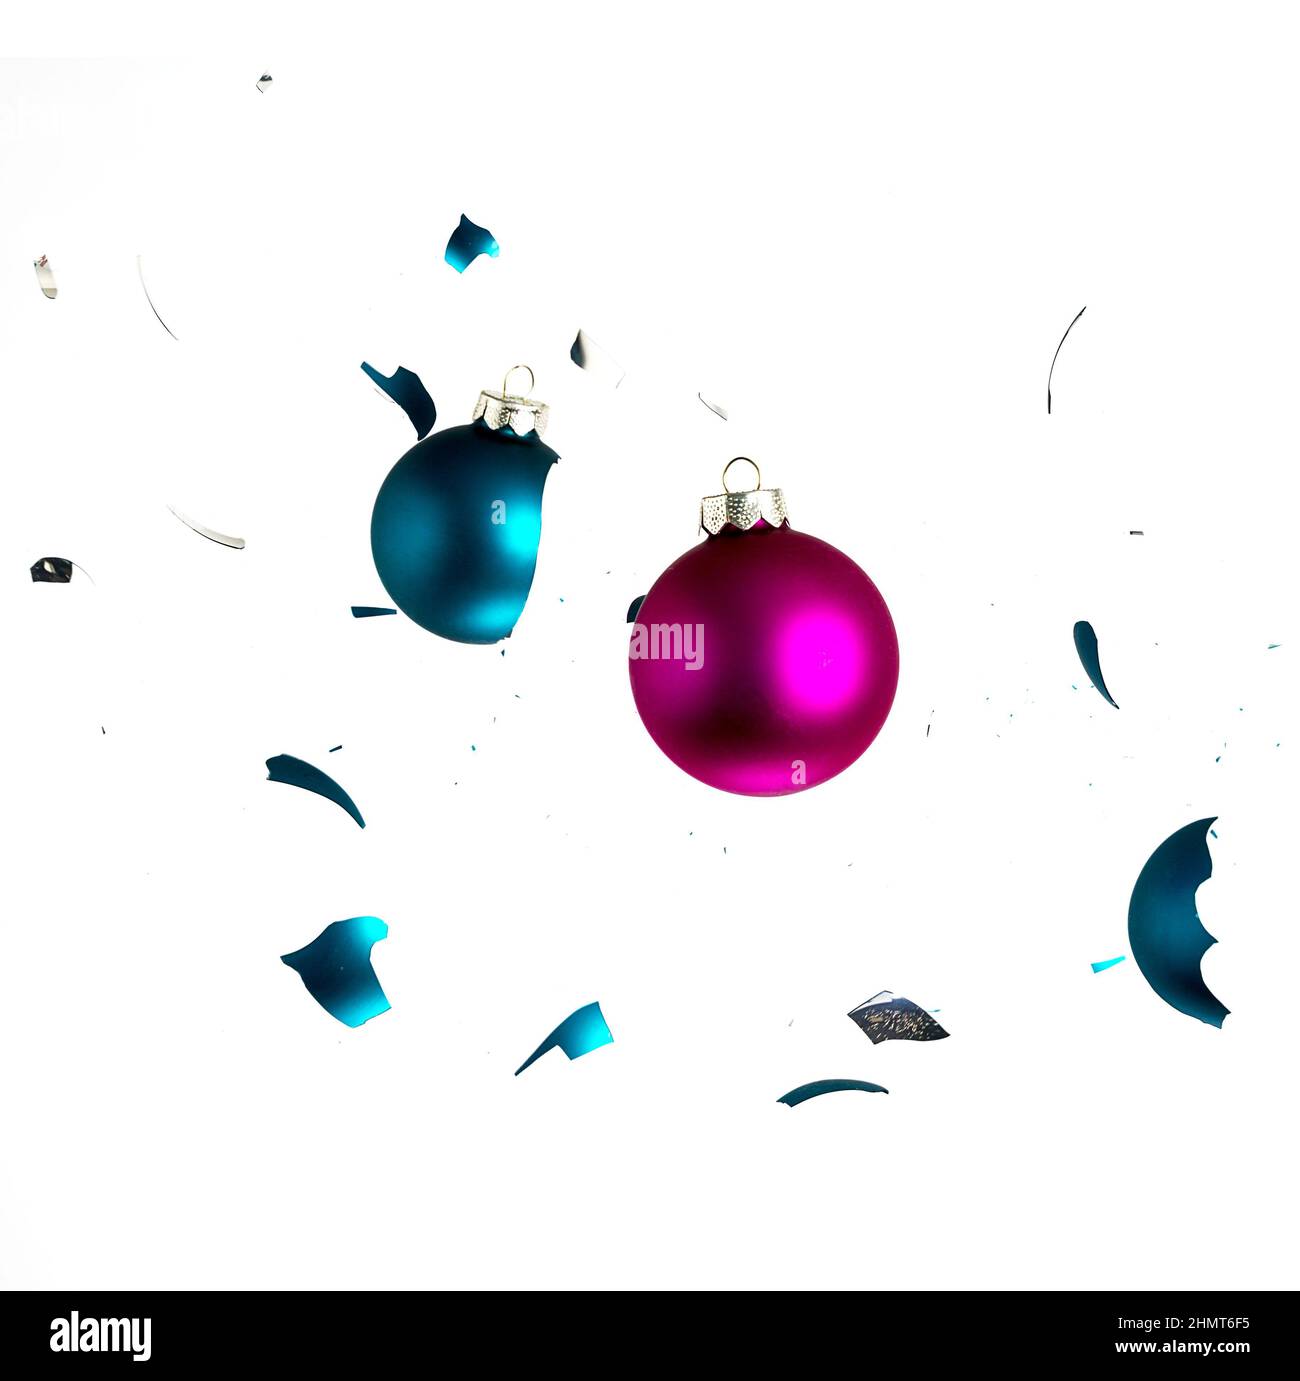 Zwei weihnachtskugeln prallen aufeinander. Erstellt im Studio mit einer 5D mark II. Stock Photo